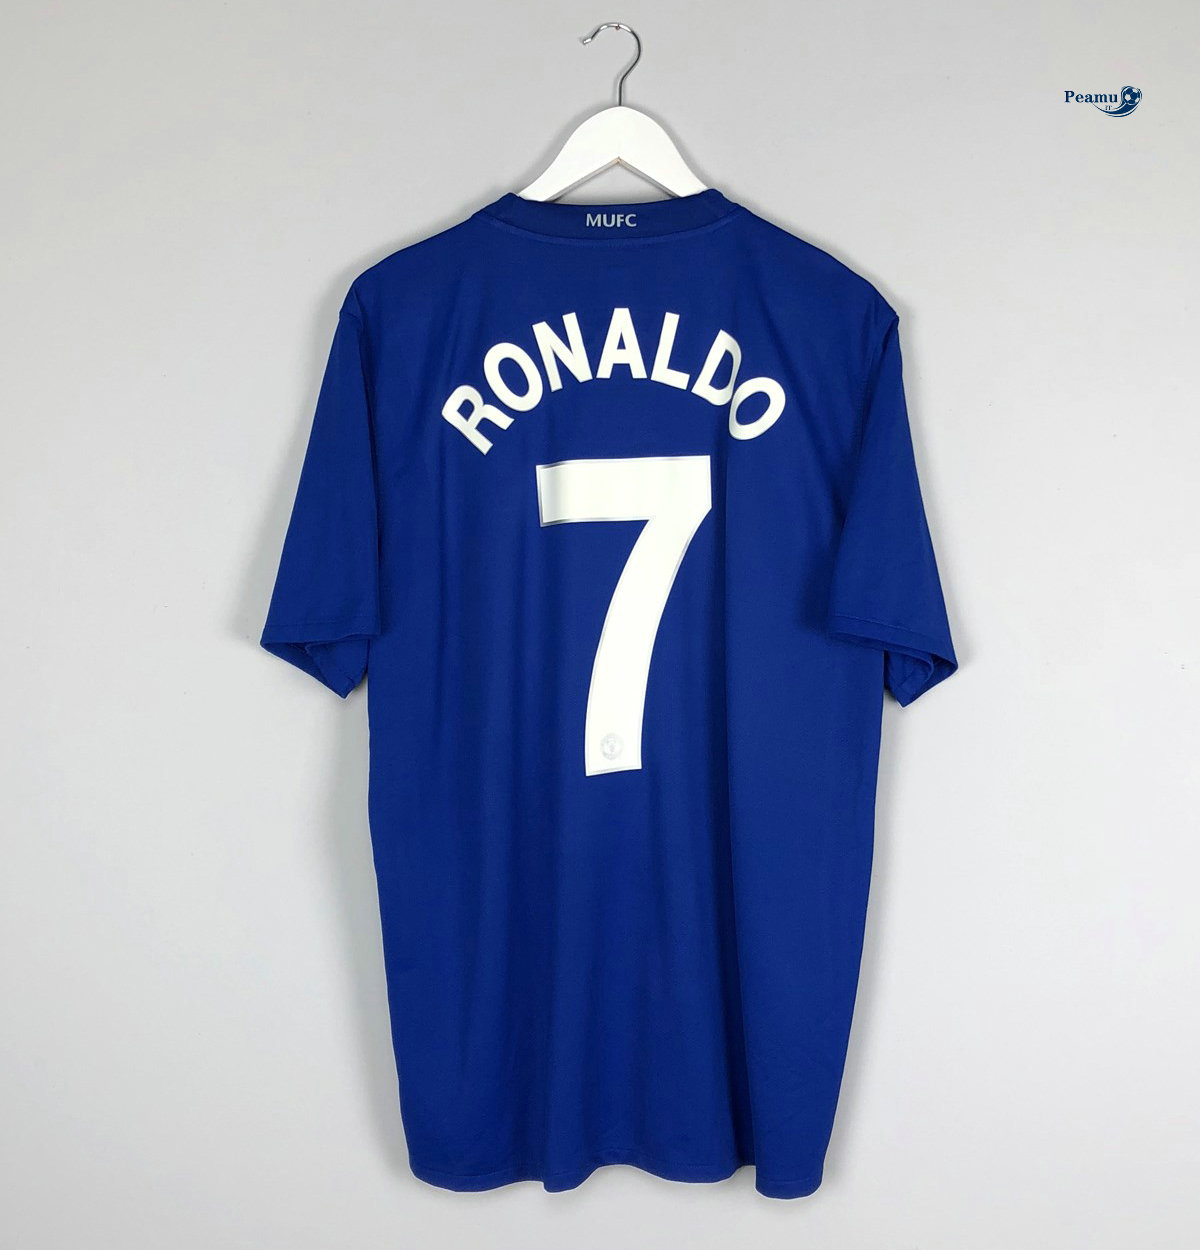 Classico Maglie Manchester United Seconda Azzurro (7 Cristiano Ronaldo) 2008-09